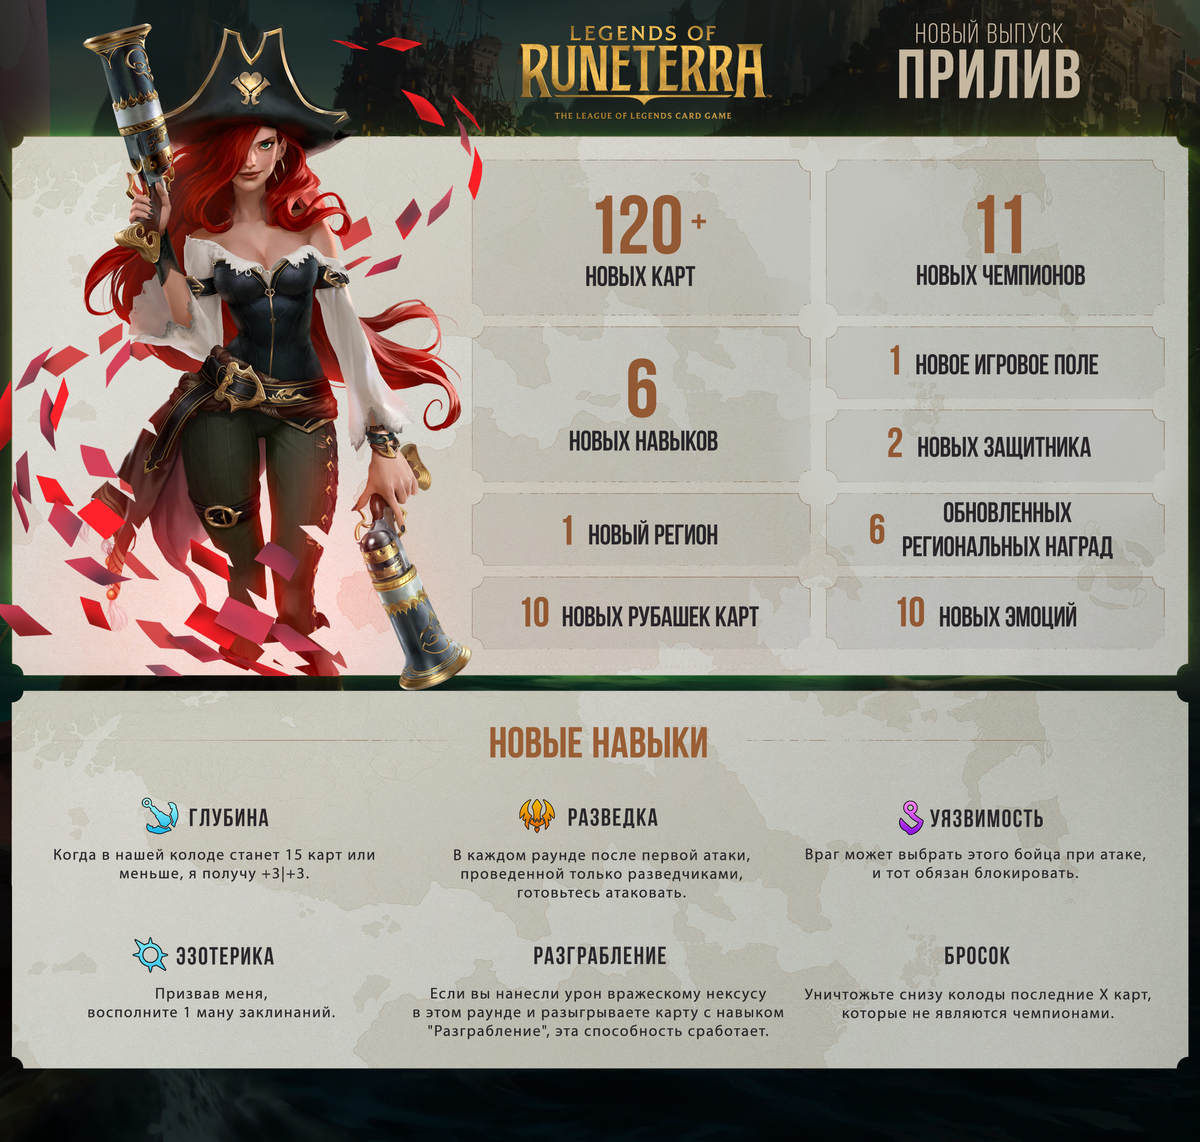 Legends of Runeterra - Вышло обновление 1.0. Игра стала доступна на мобильных устройствах